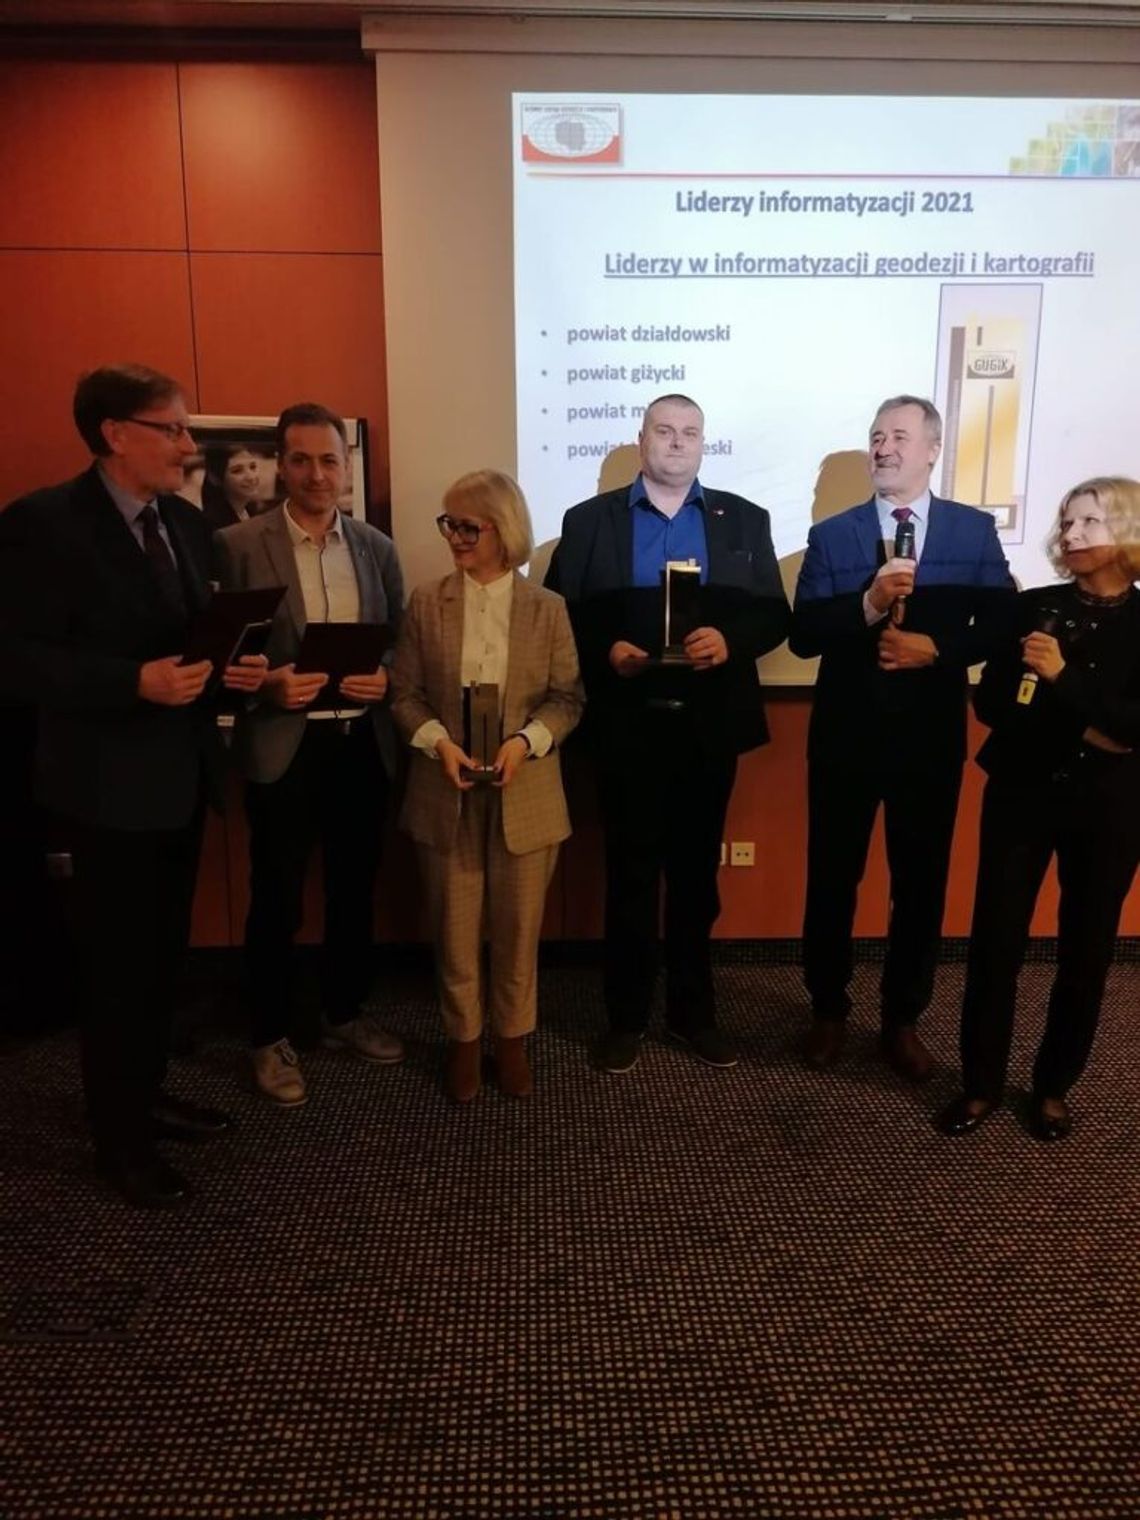 Nagroda Głównego Geodety Kraju dla Powiatu Działdowskiego za informatyzację geodezji i kartografii!